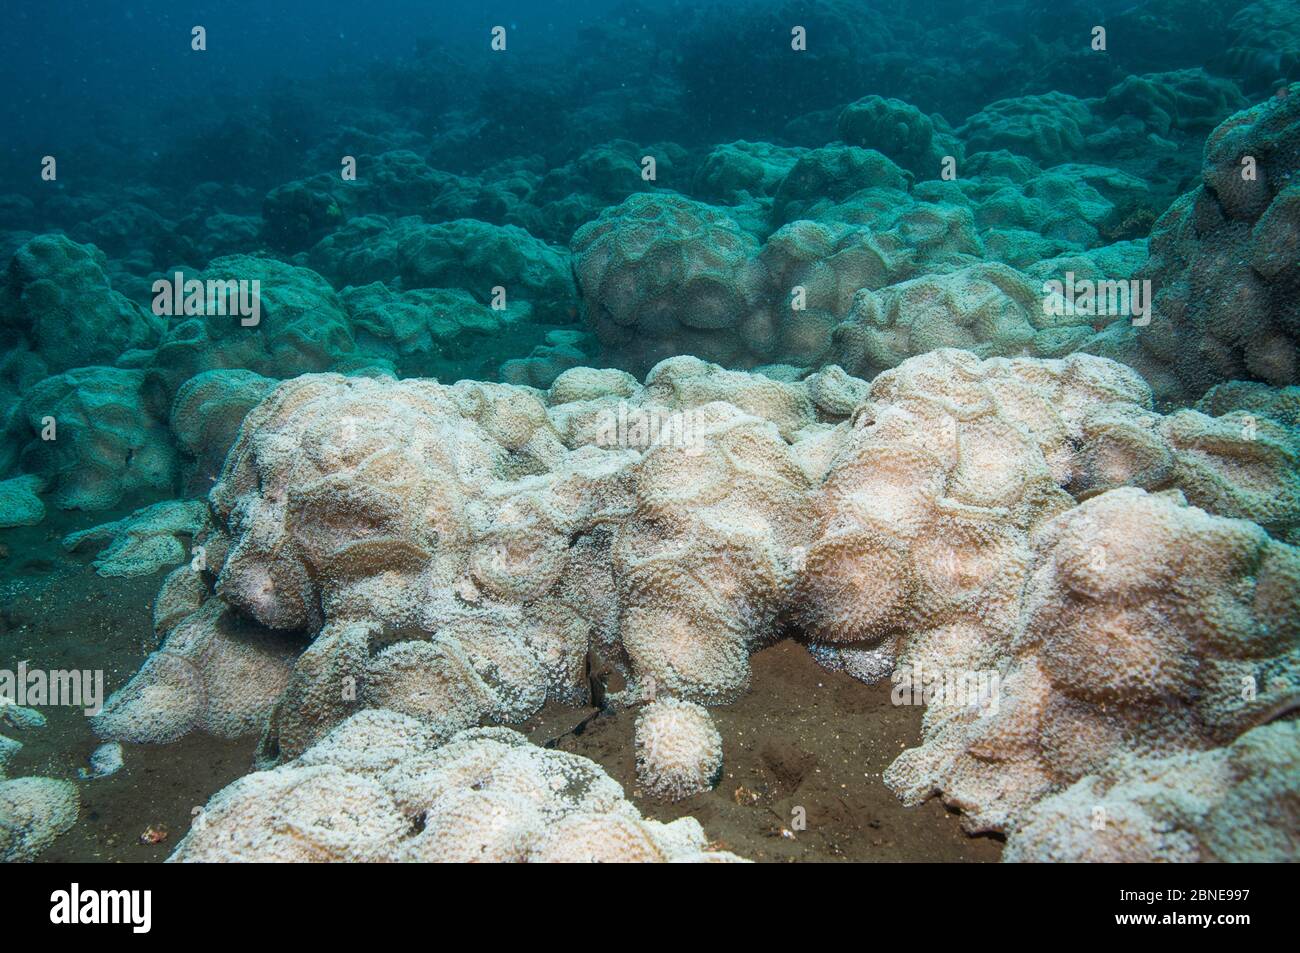 Densas agregaciones de Corallimorfos (Discosoma rhodostoma) que cubren casi toda la pendiente del arrecife. Bali, Indonesia. Foto de stock